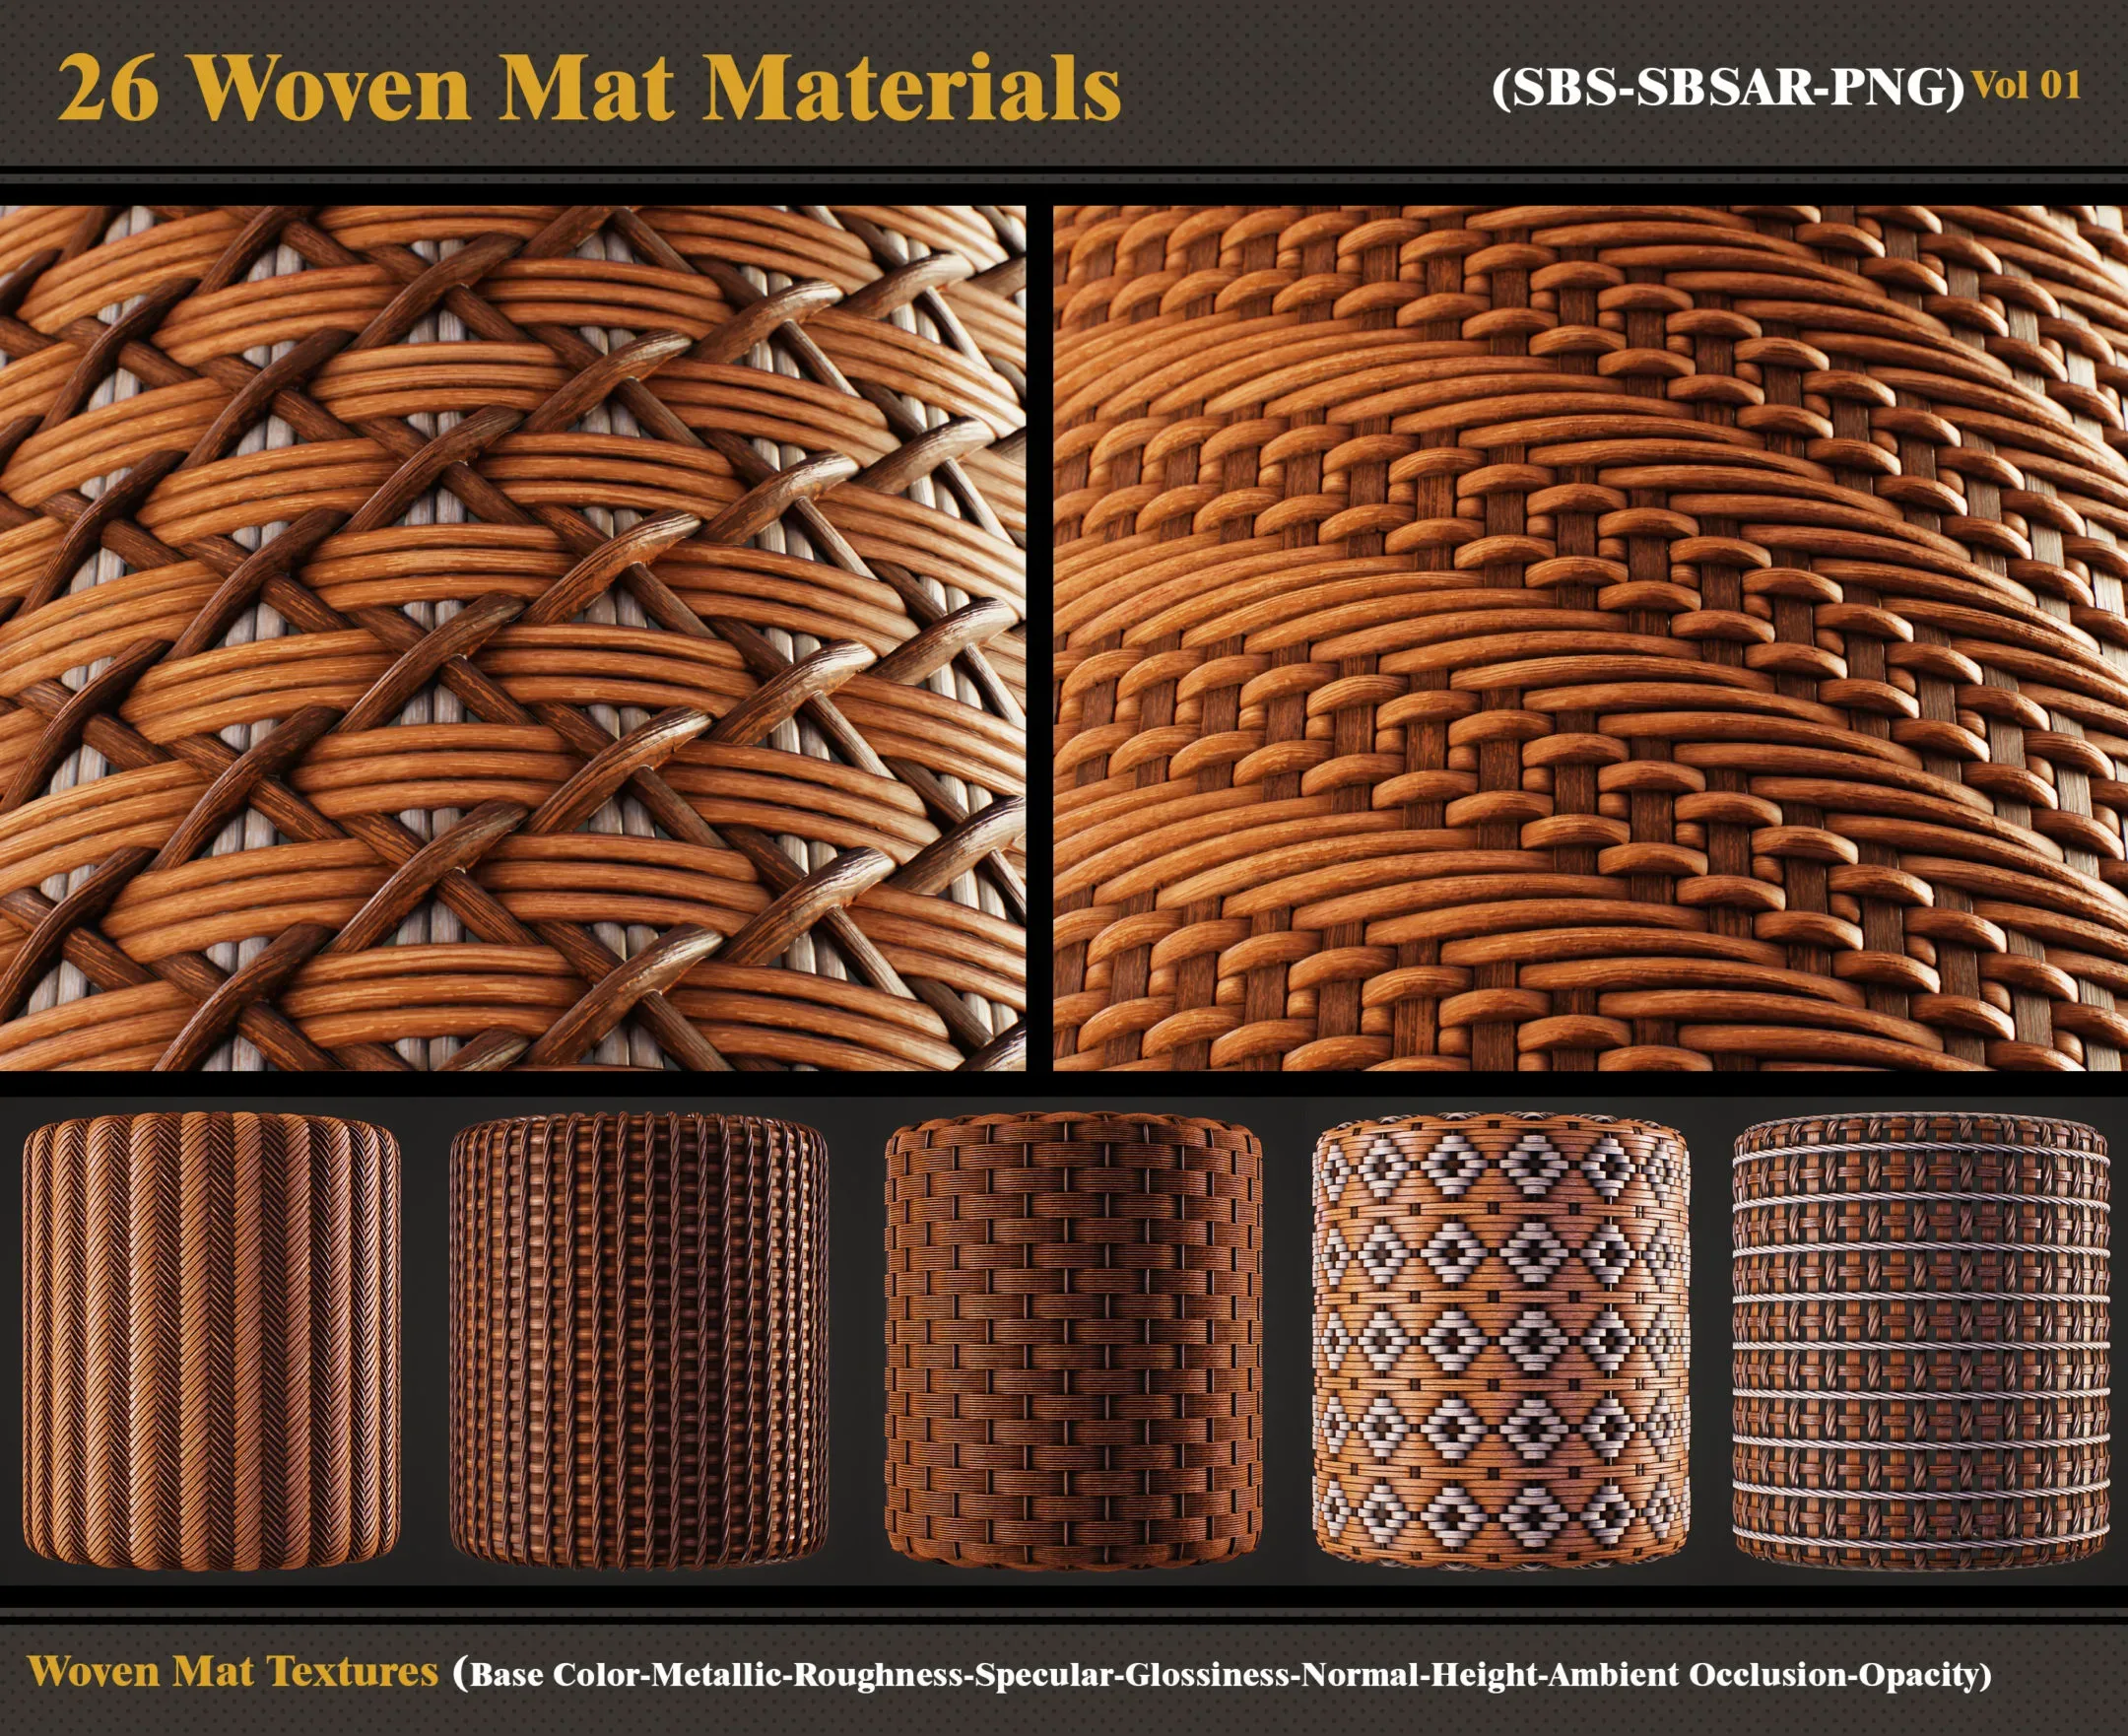 26 Woven Mat Materials + Textures